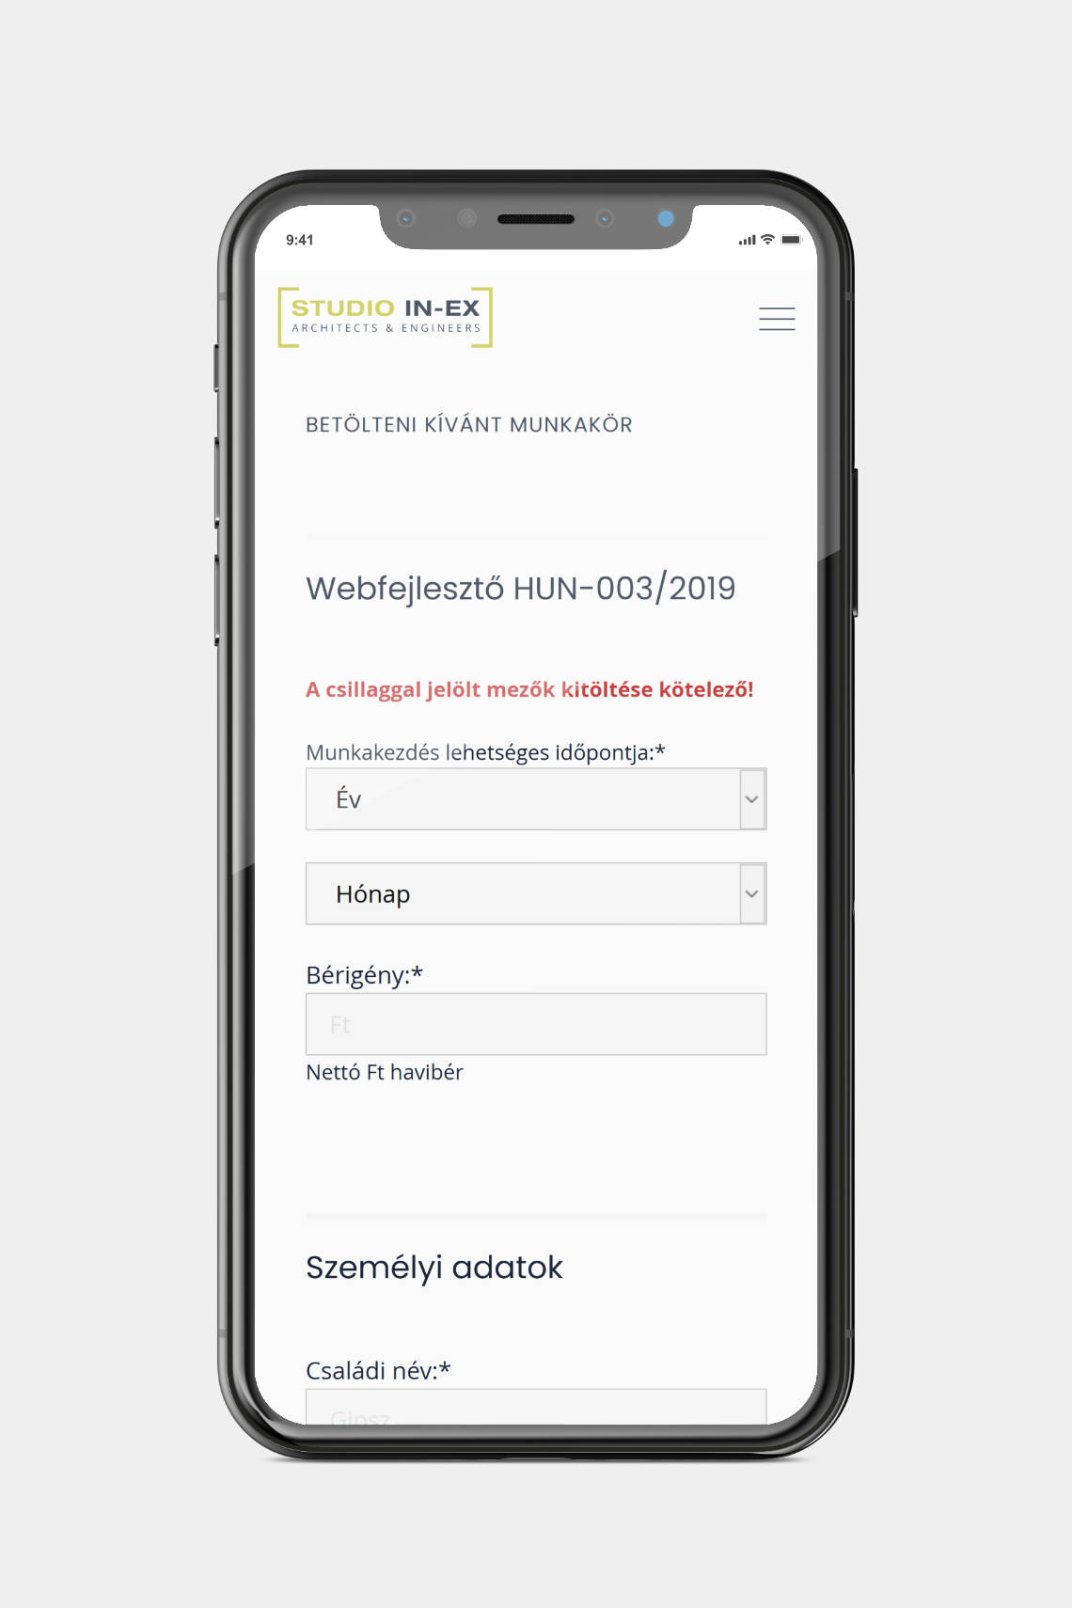 Márton Lente responsive web design contact page screen